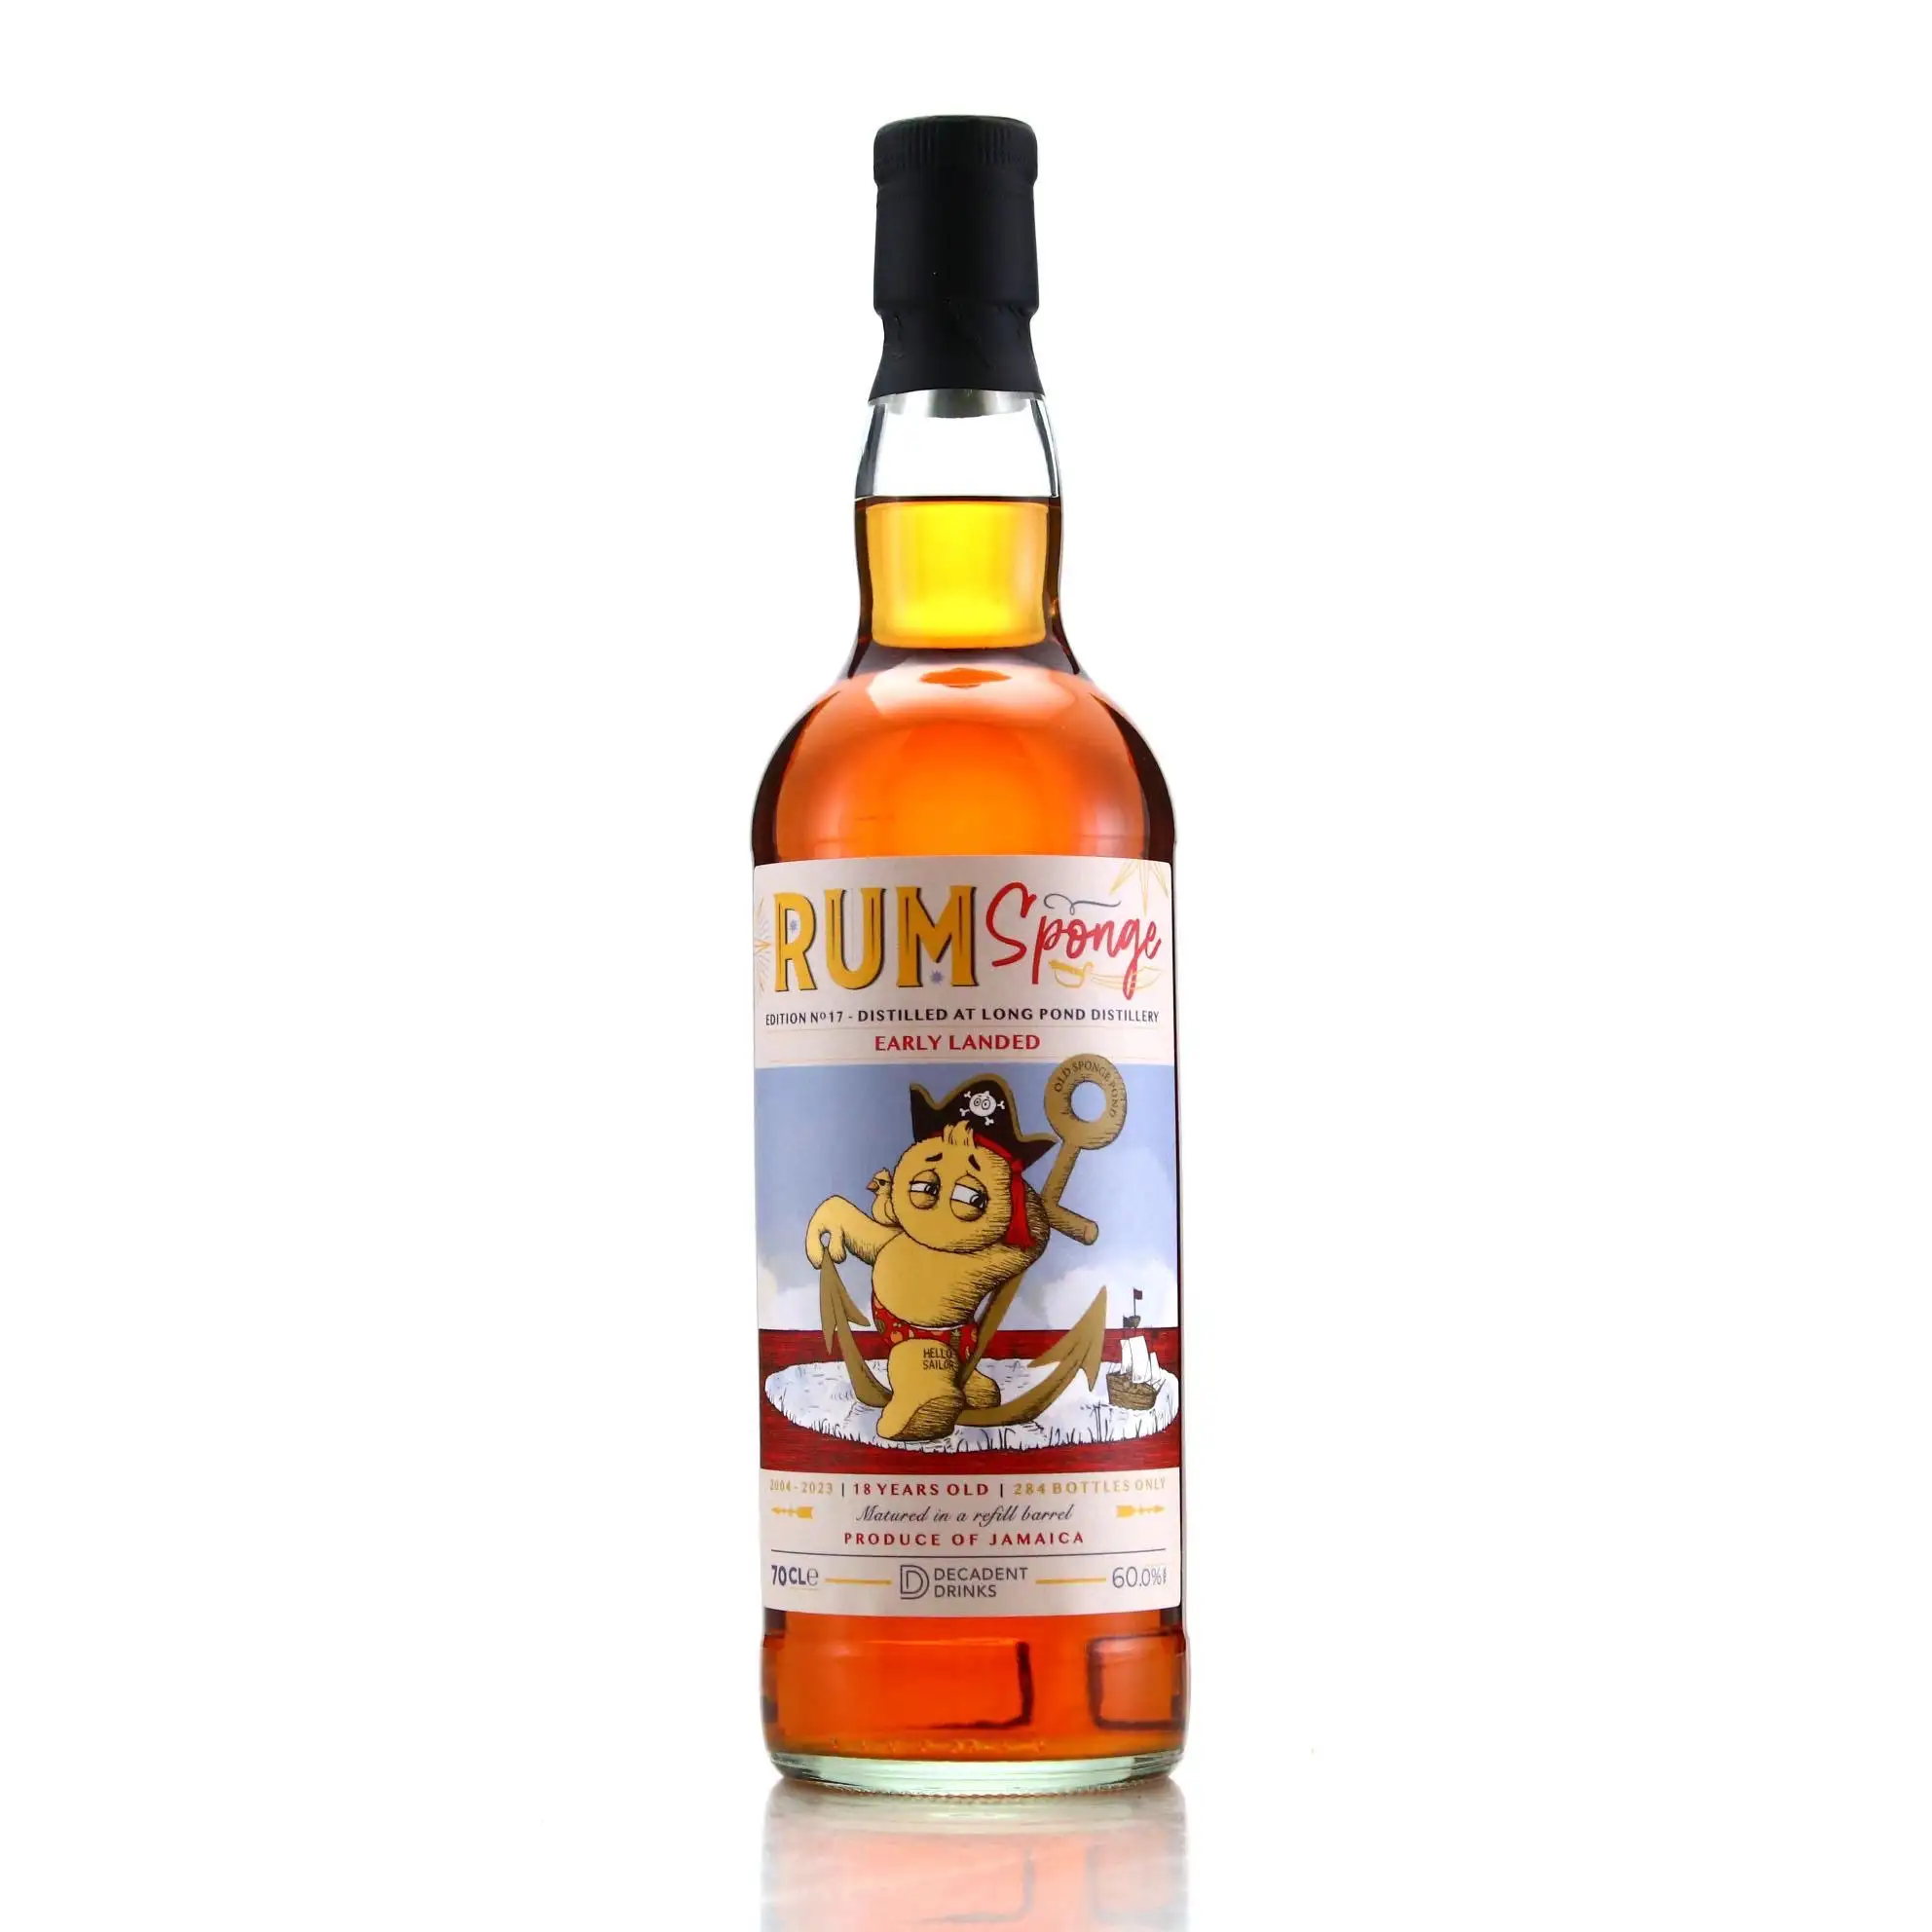 LVMH launches premium Cuban rum brand, Eminente